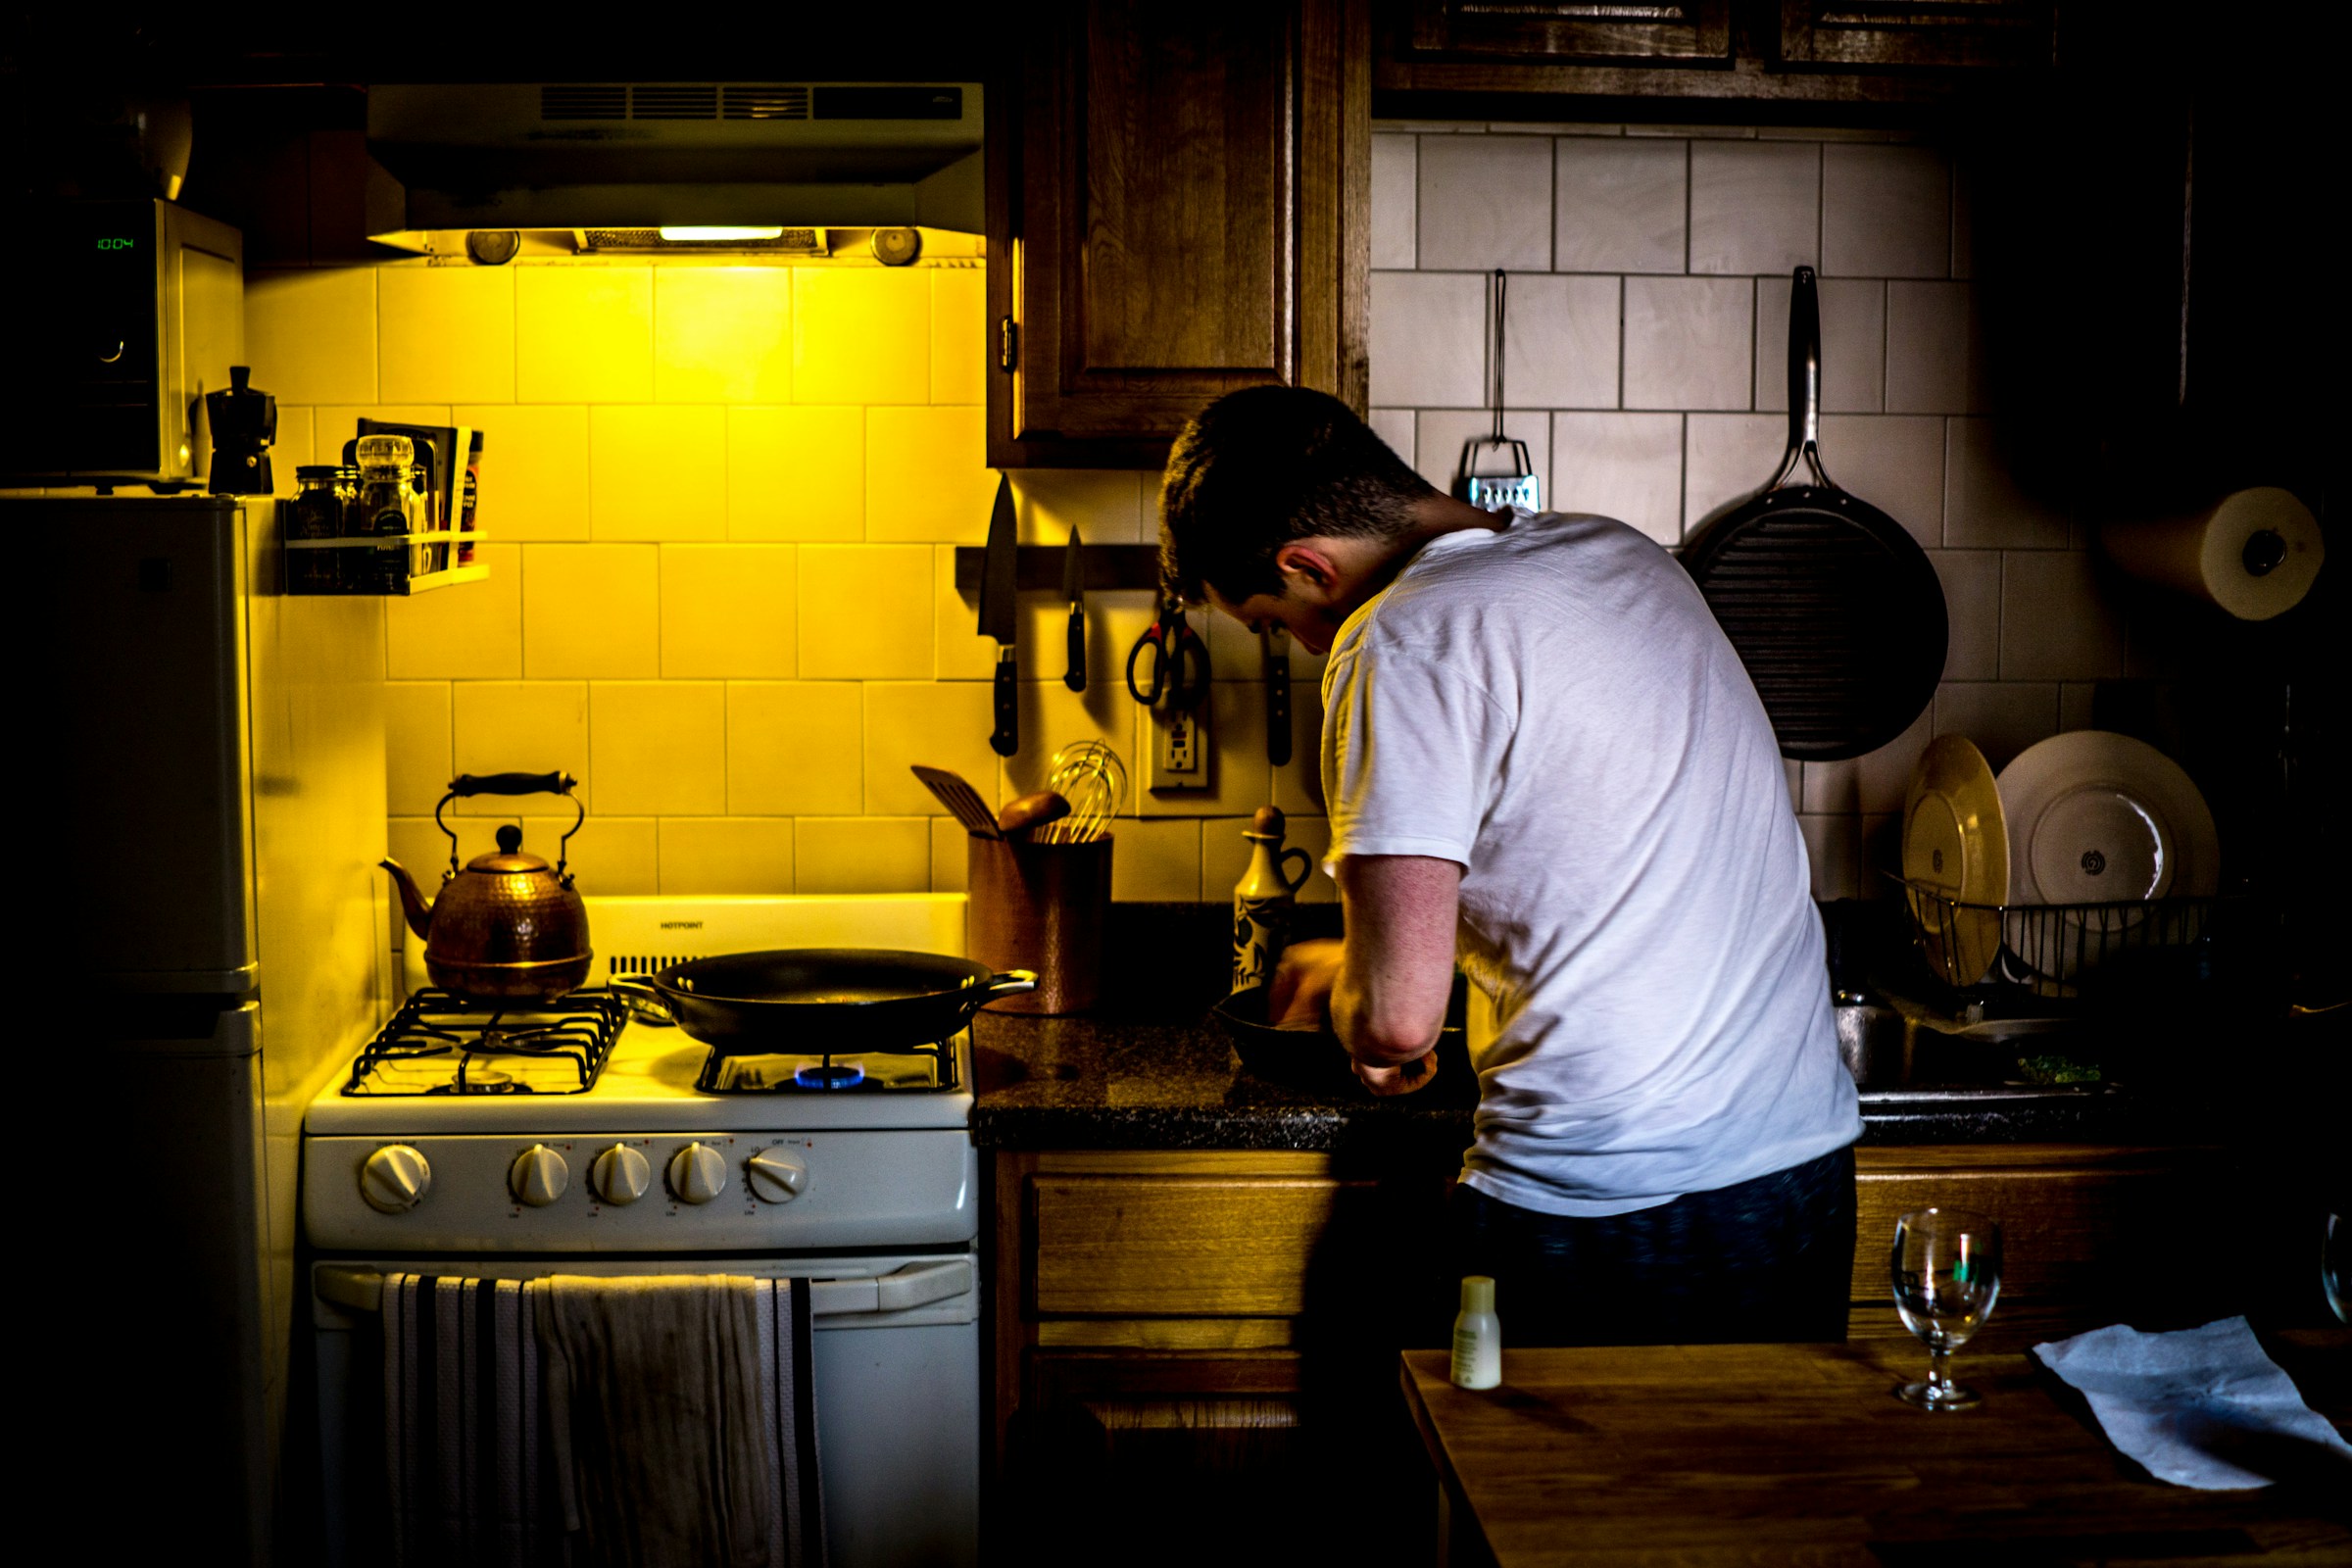 Ein Mann in der Küche | Quelle: Unsplash